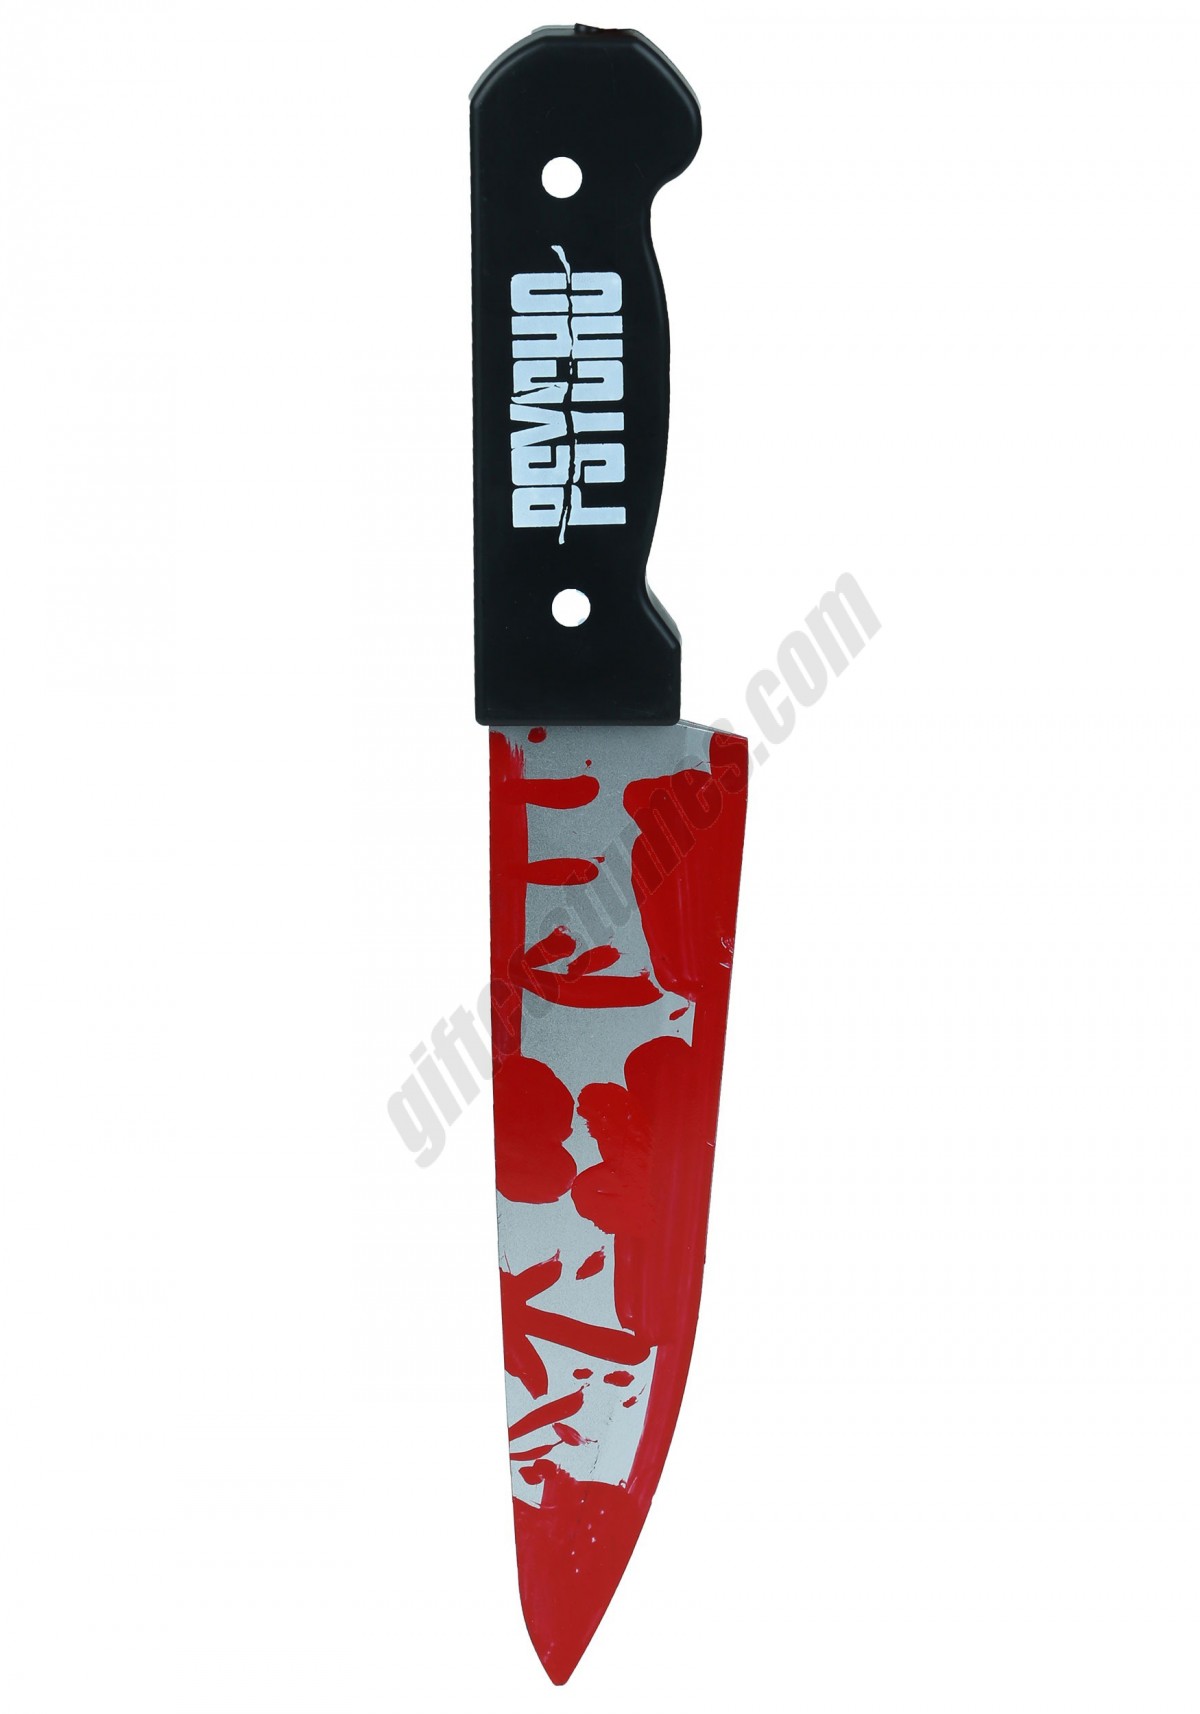 Psycho Knife Promotions - -0